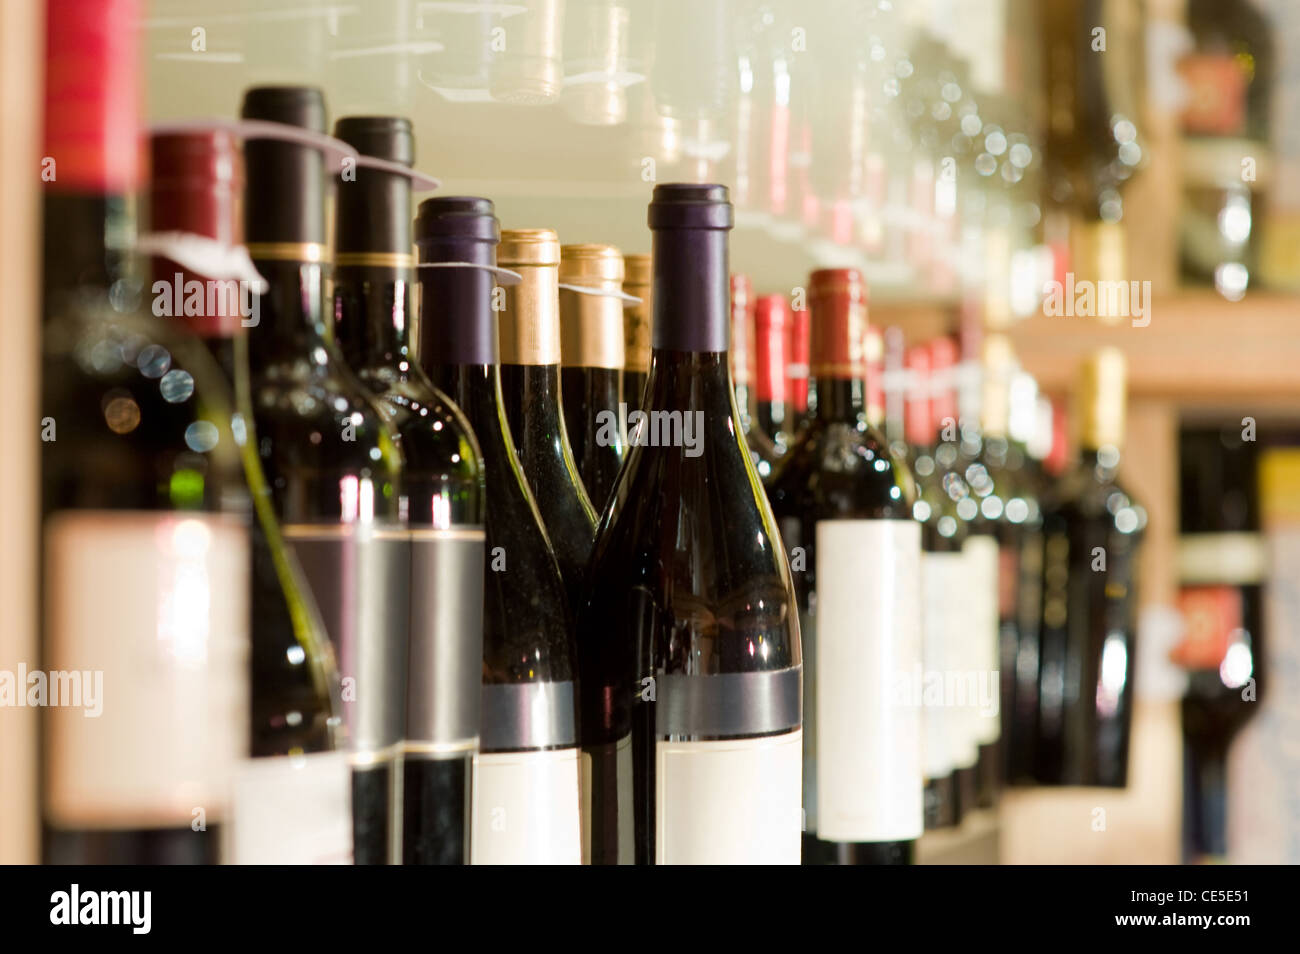 Une sélection de bouteilles de vin sur une étagère Banque D'Images